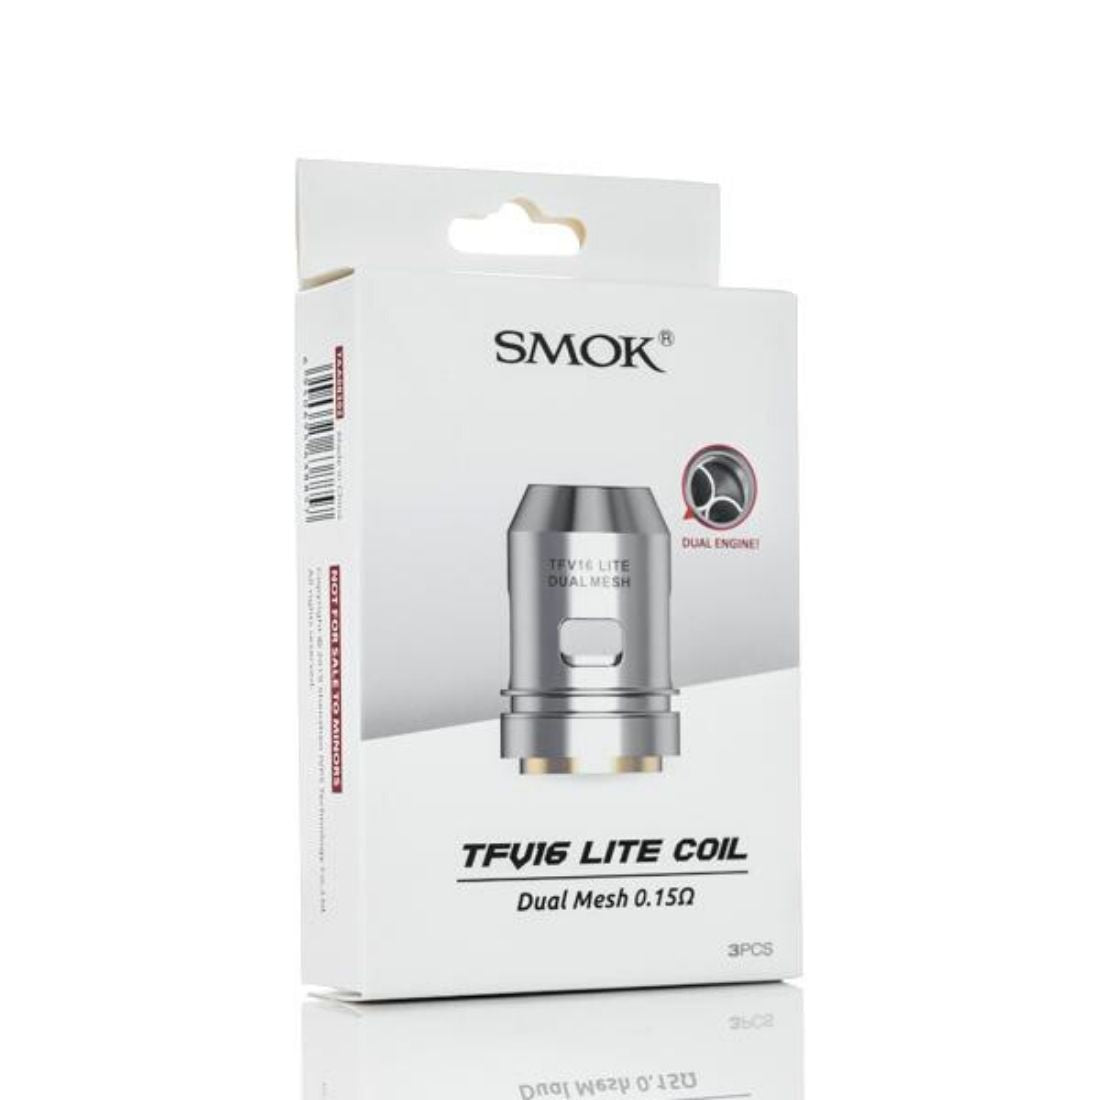 SMOK TFV16 Lite Dual Mesh Coil